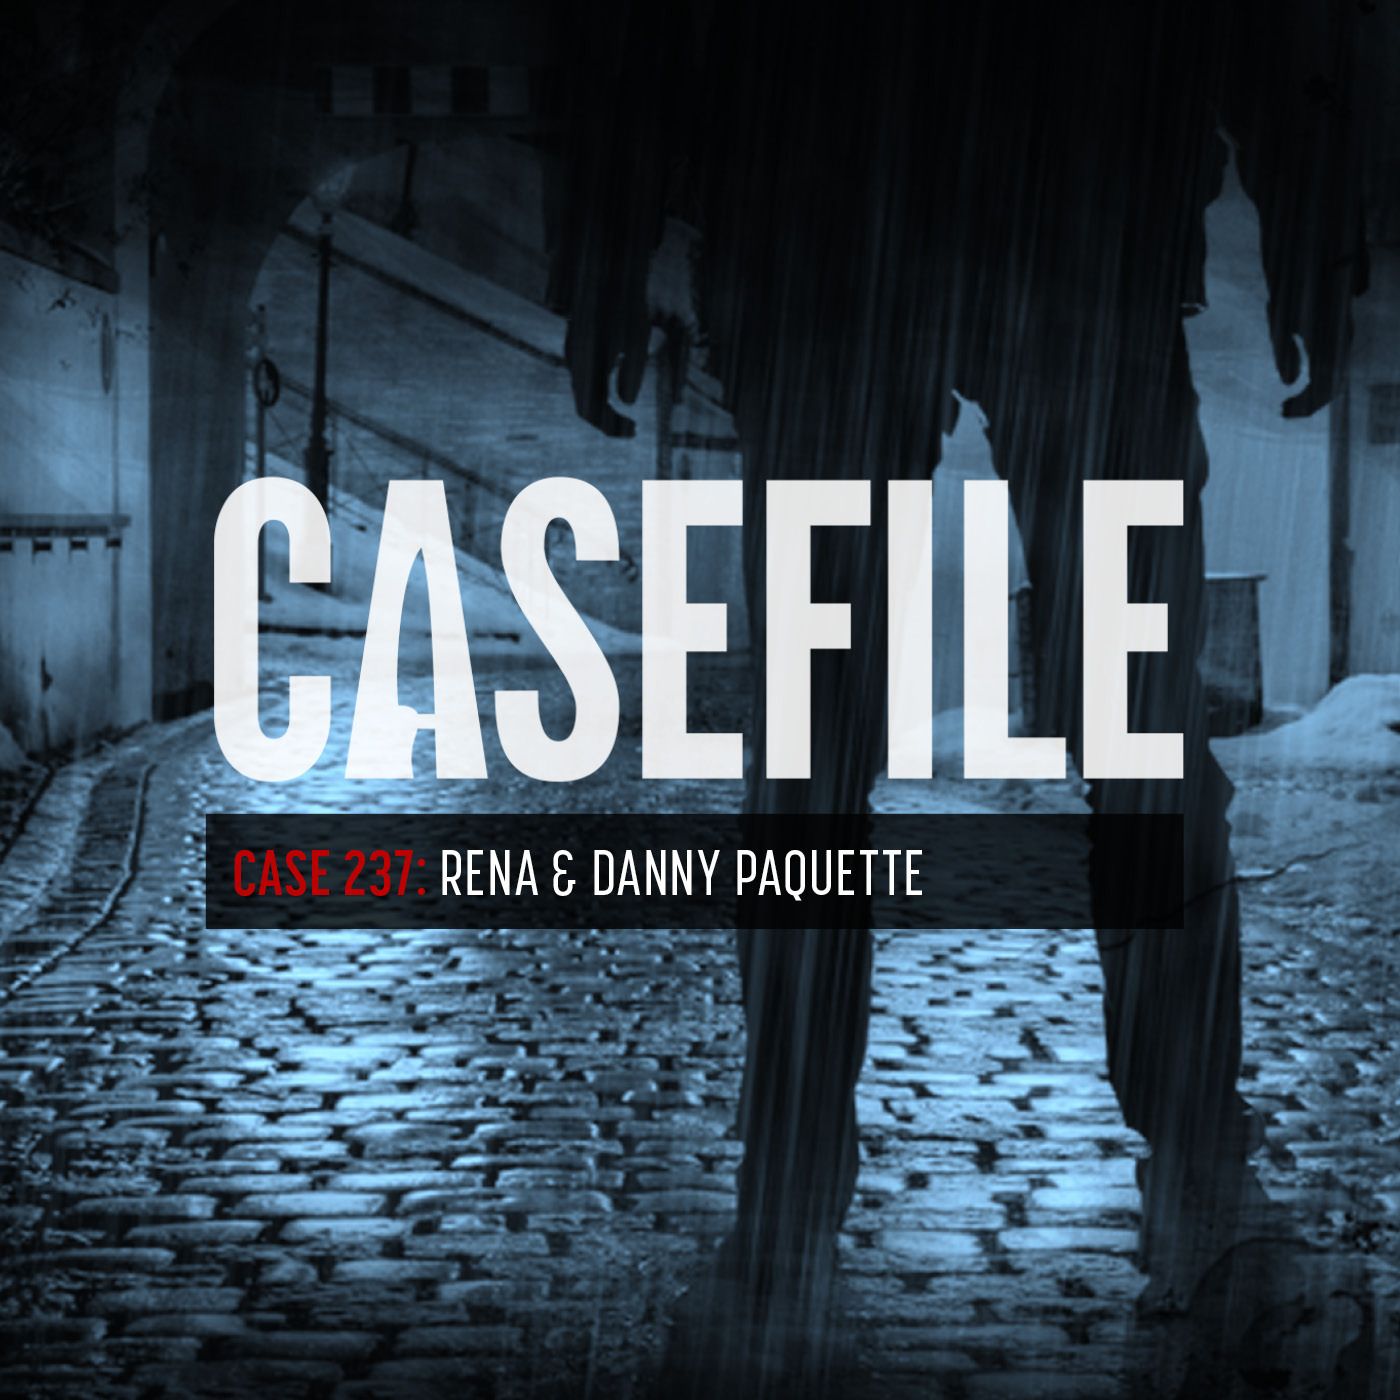 Case 237: Rena & Danny Paquette